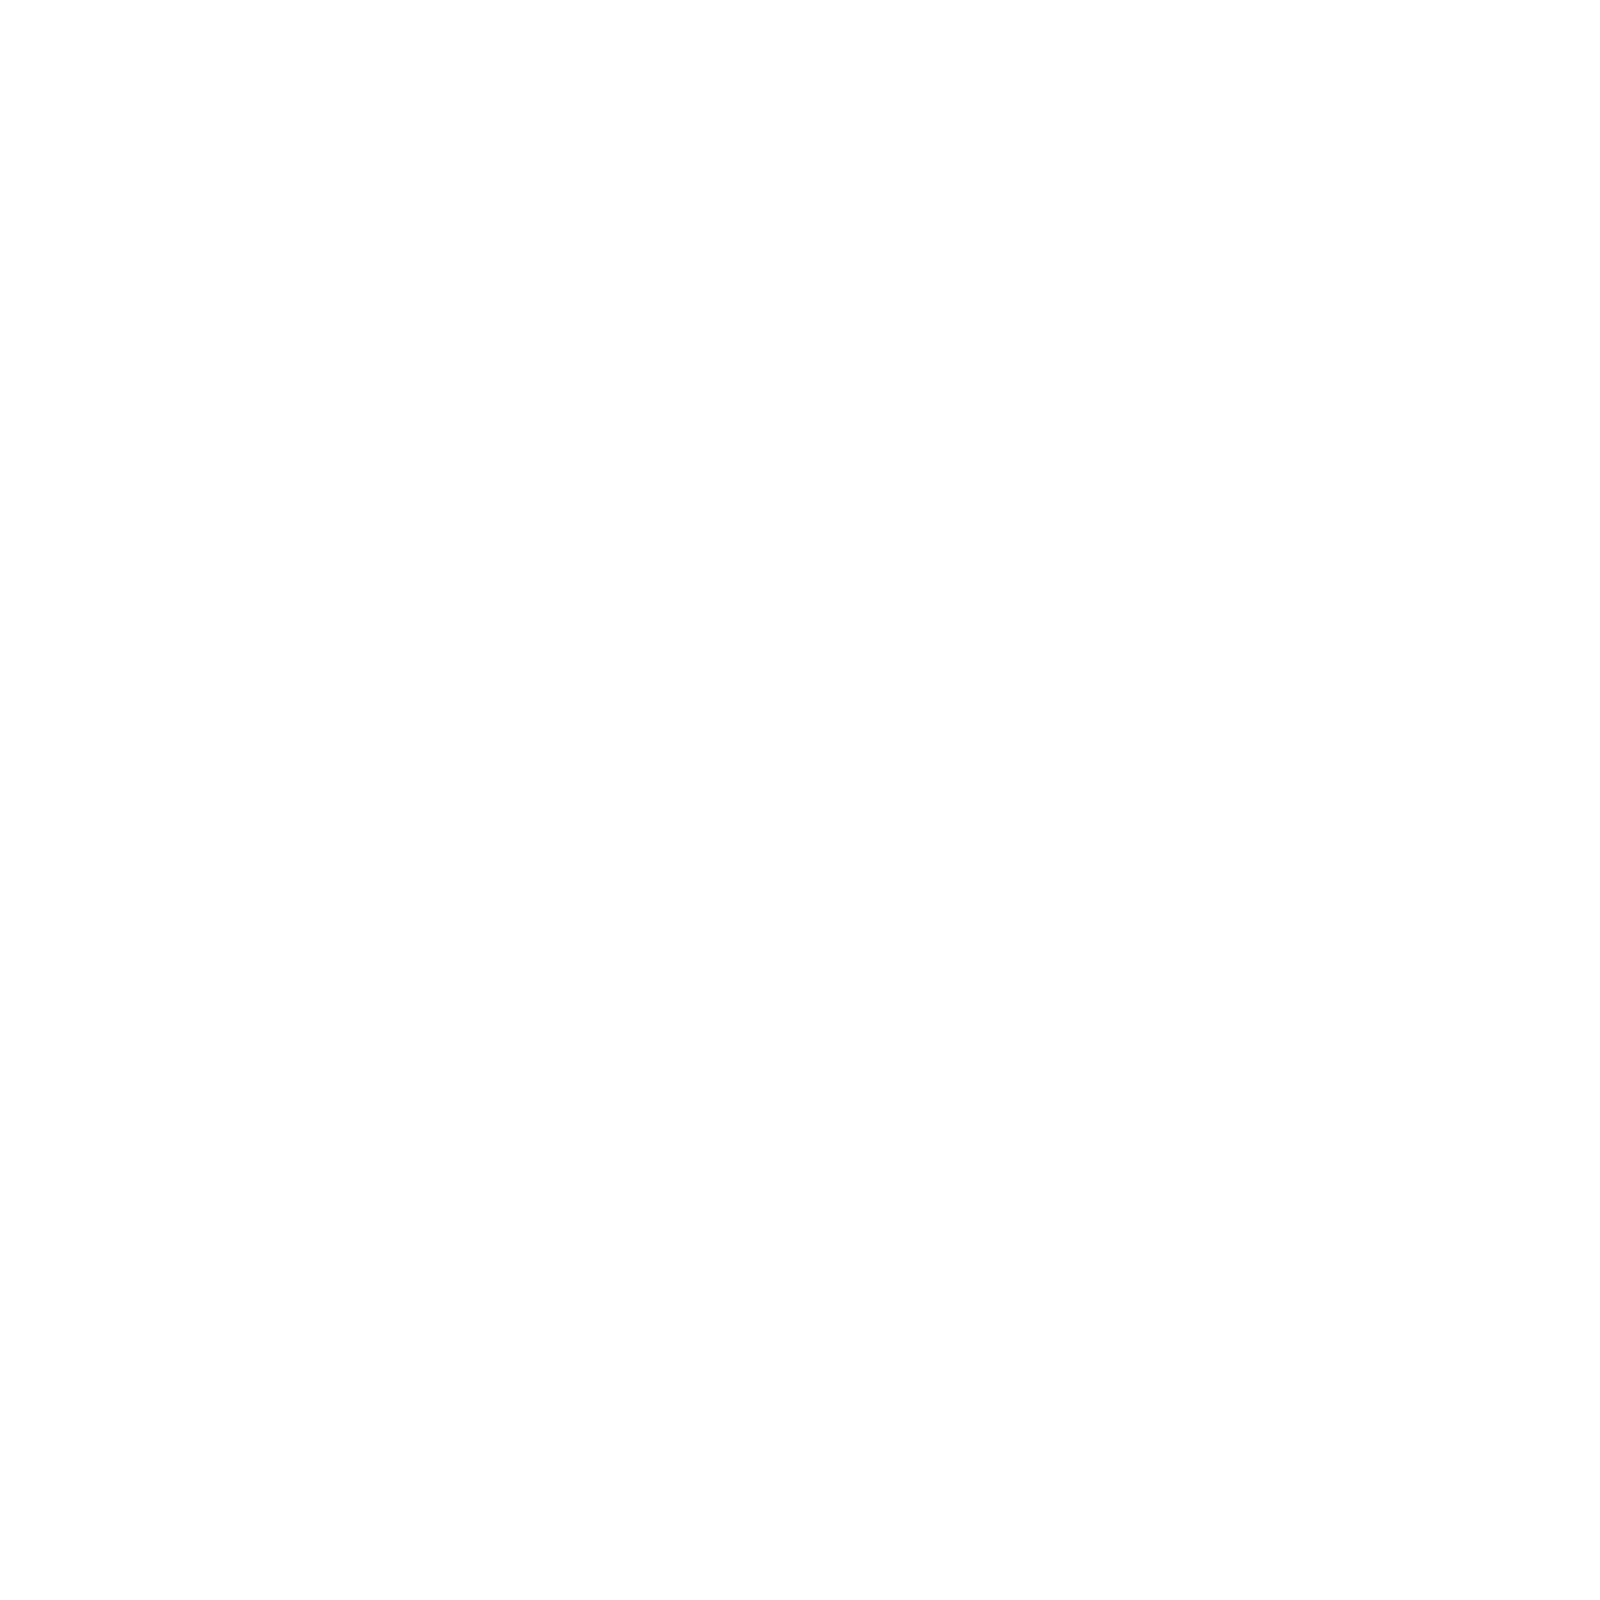 David Smith Homes Group